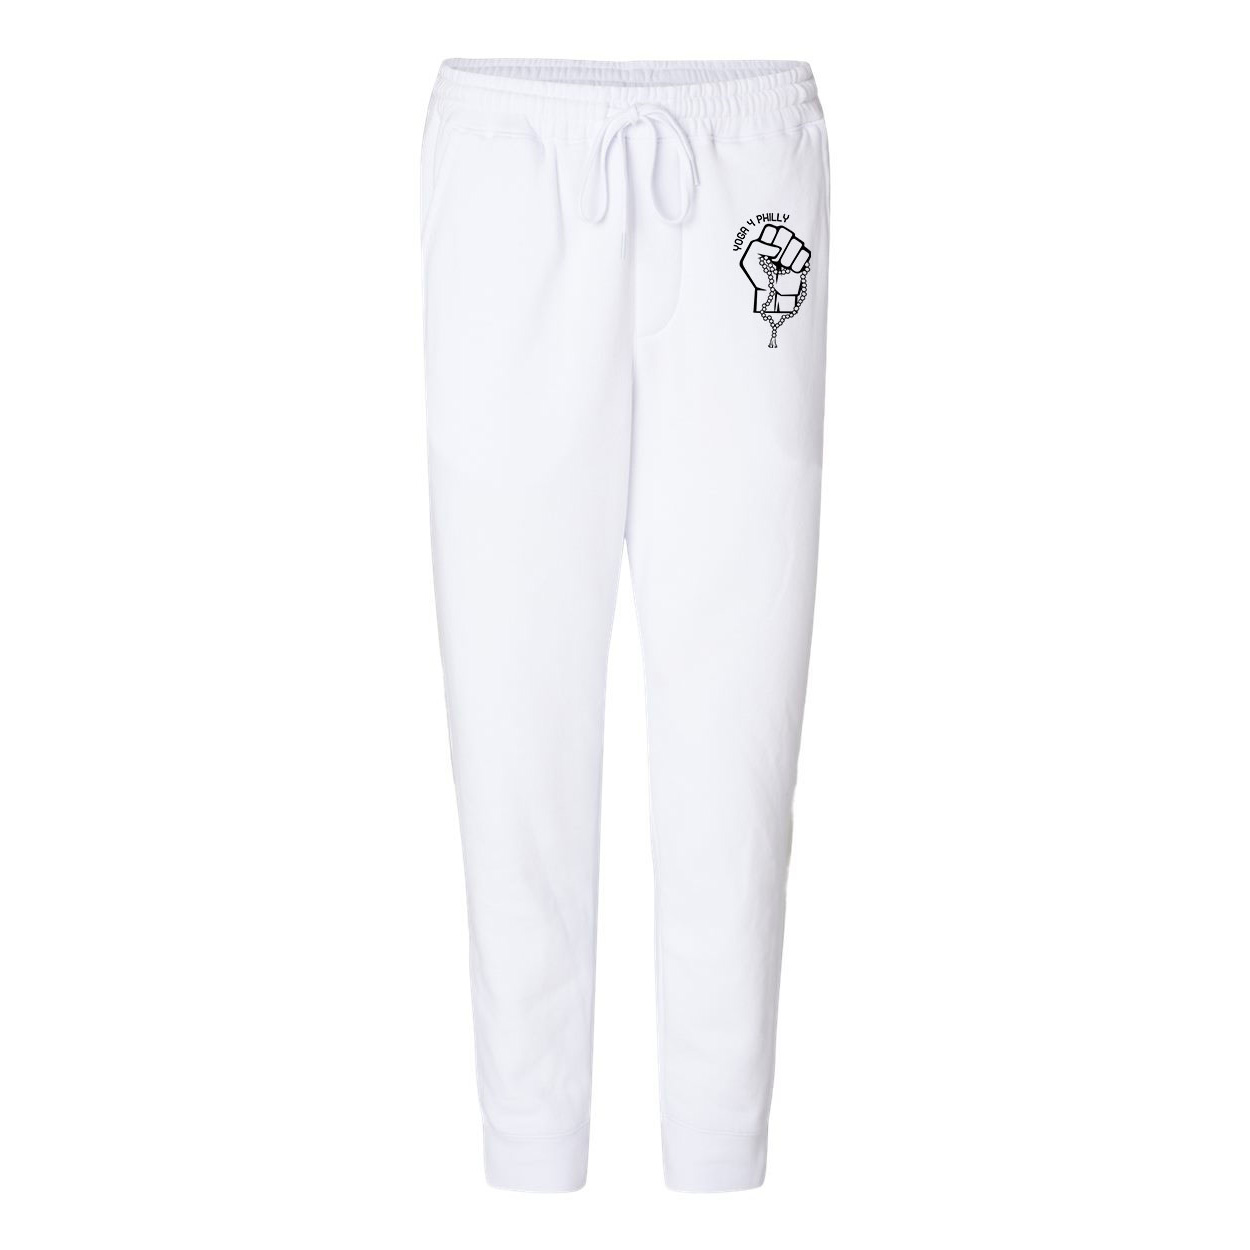 Yoga4Philly White Fleece Pants